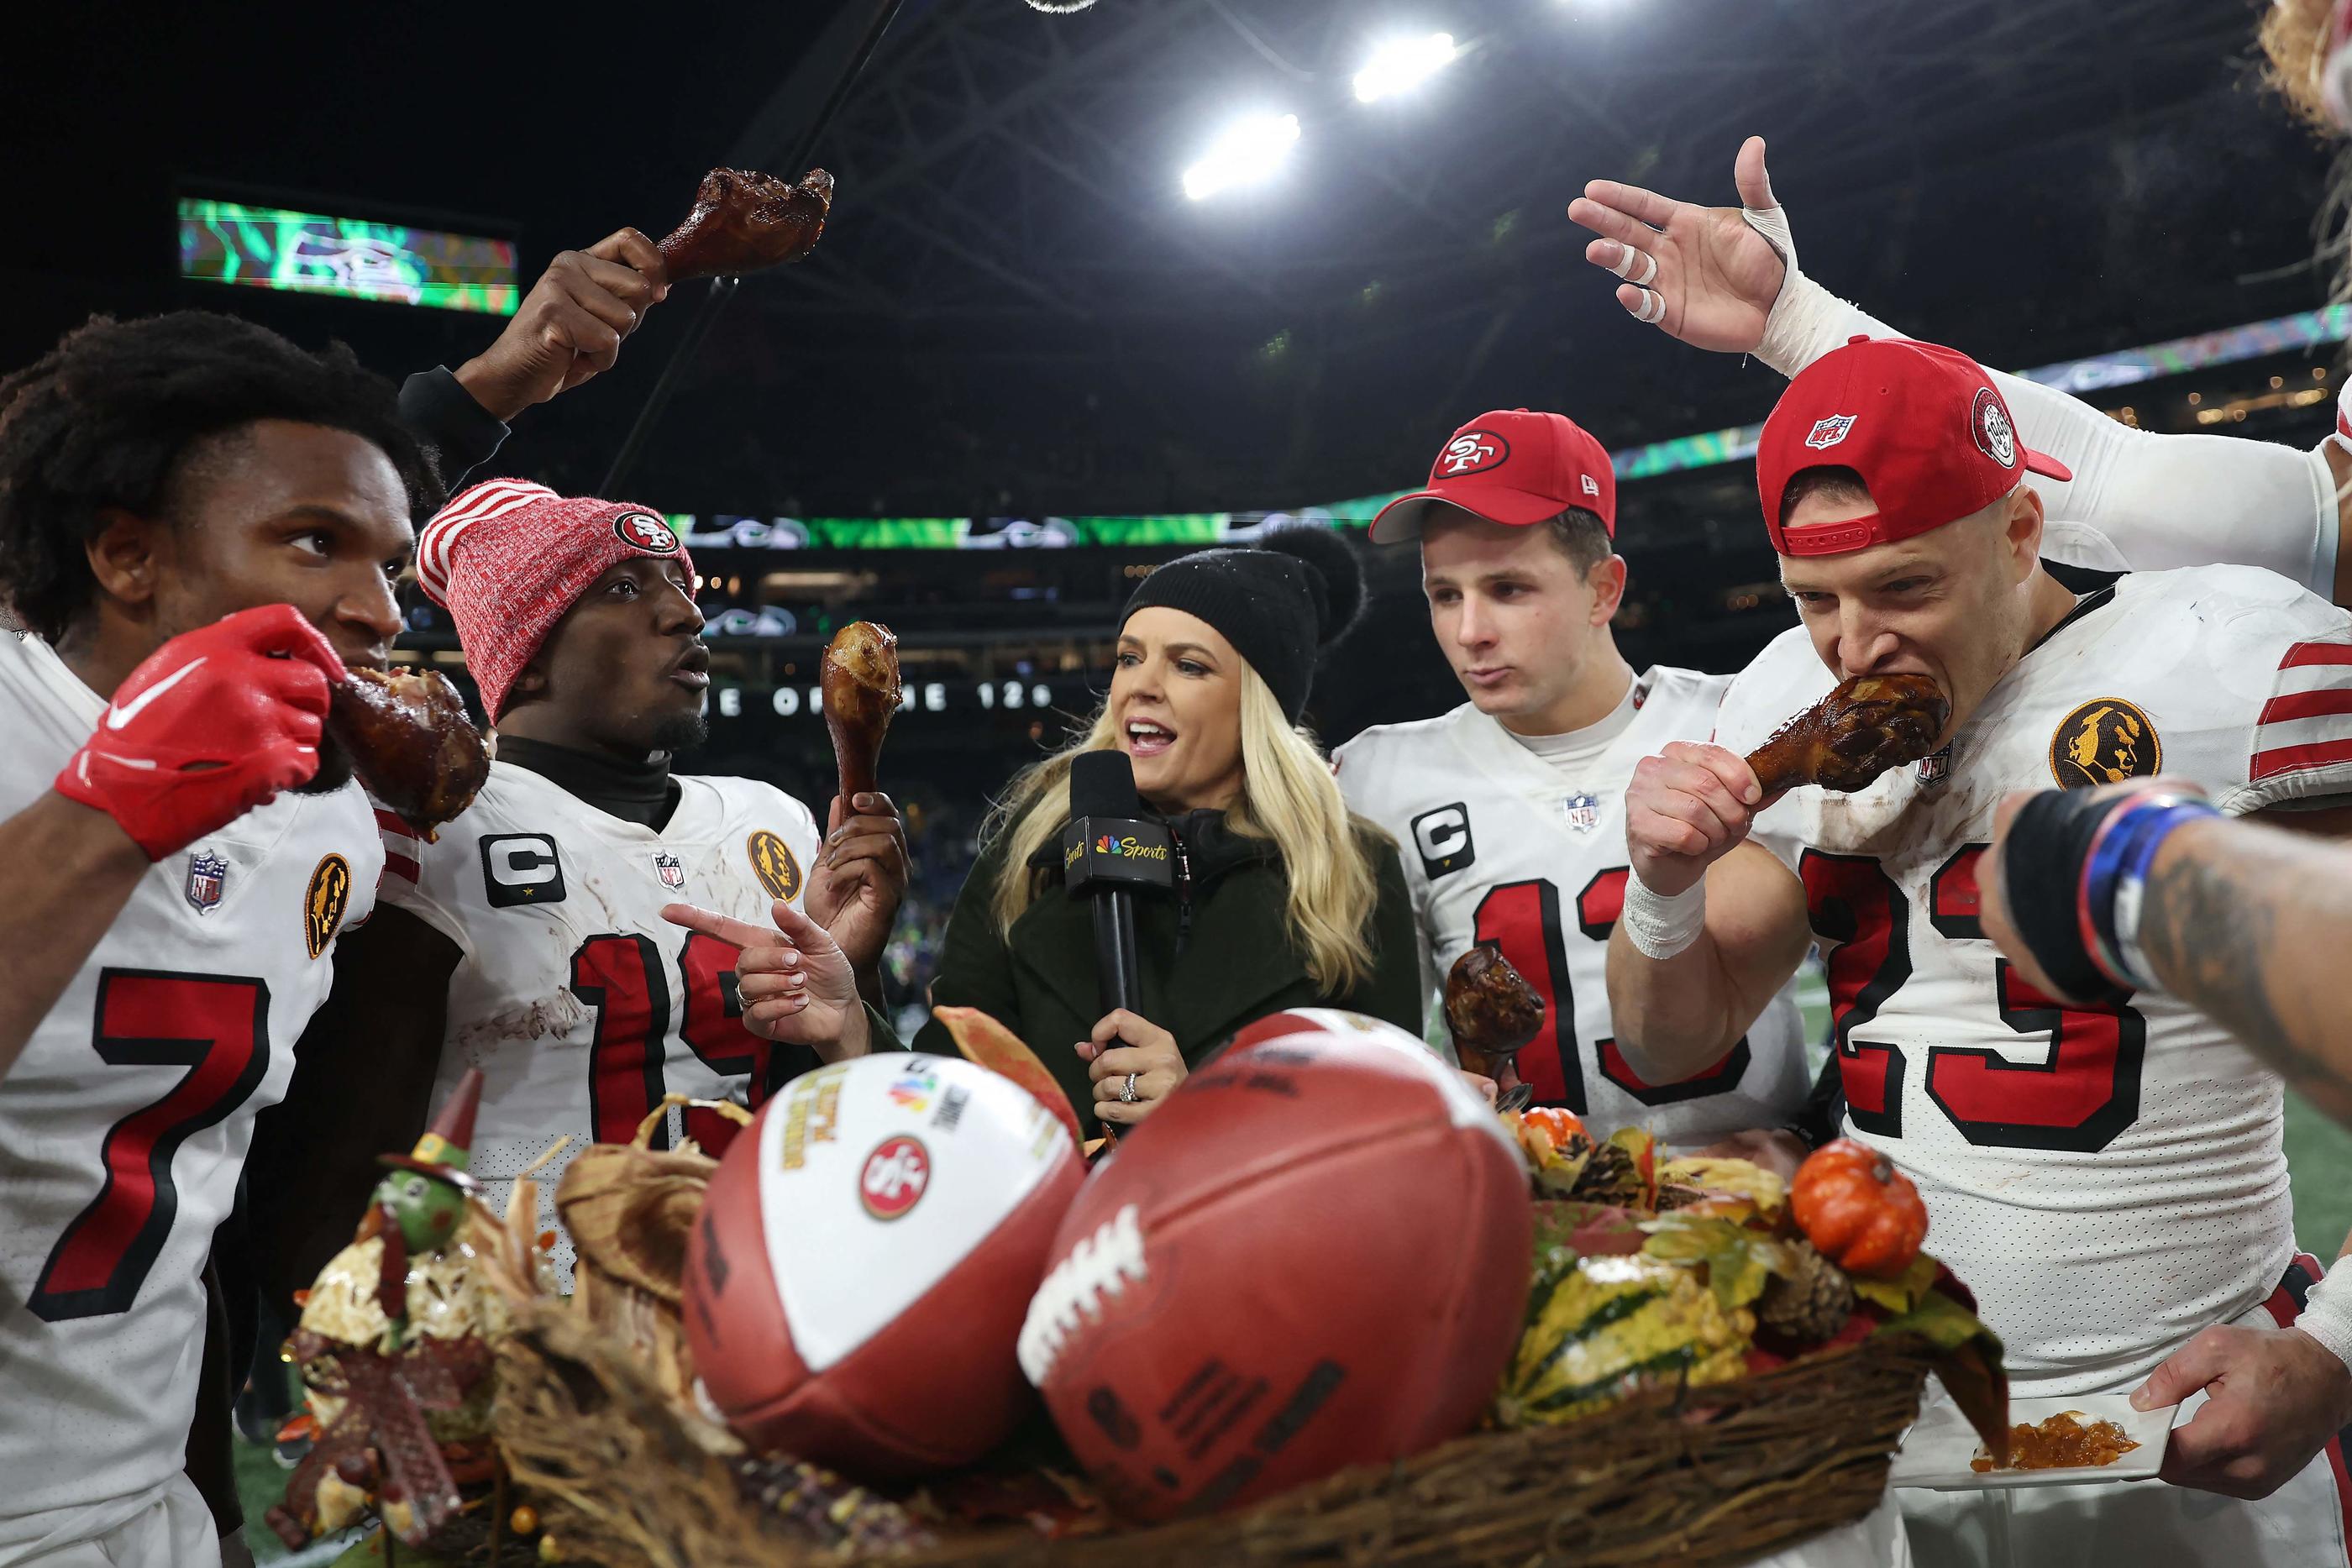 Les stars des 49ers de San Francisco mangent la dinde de Thanksgiving à l'issue de leur victoire, ce jeudi contre Seattle. AFP/Steph Chambers